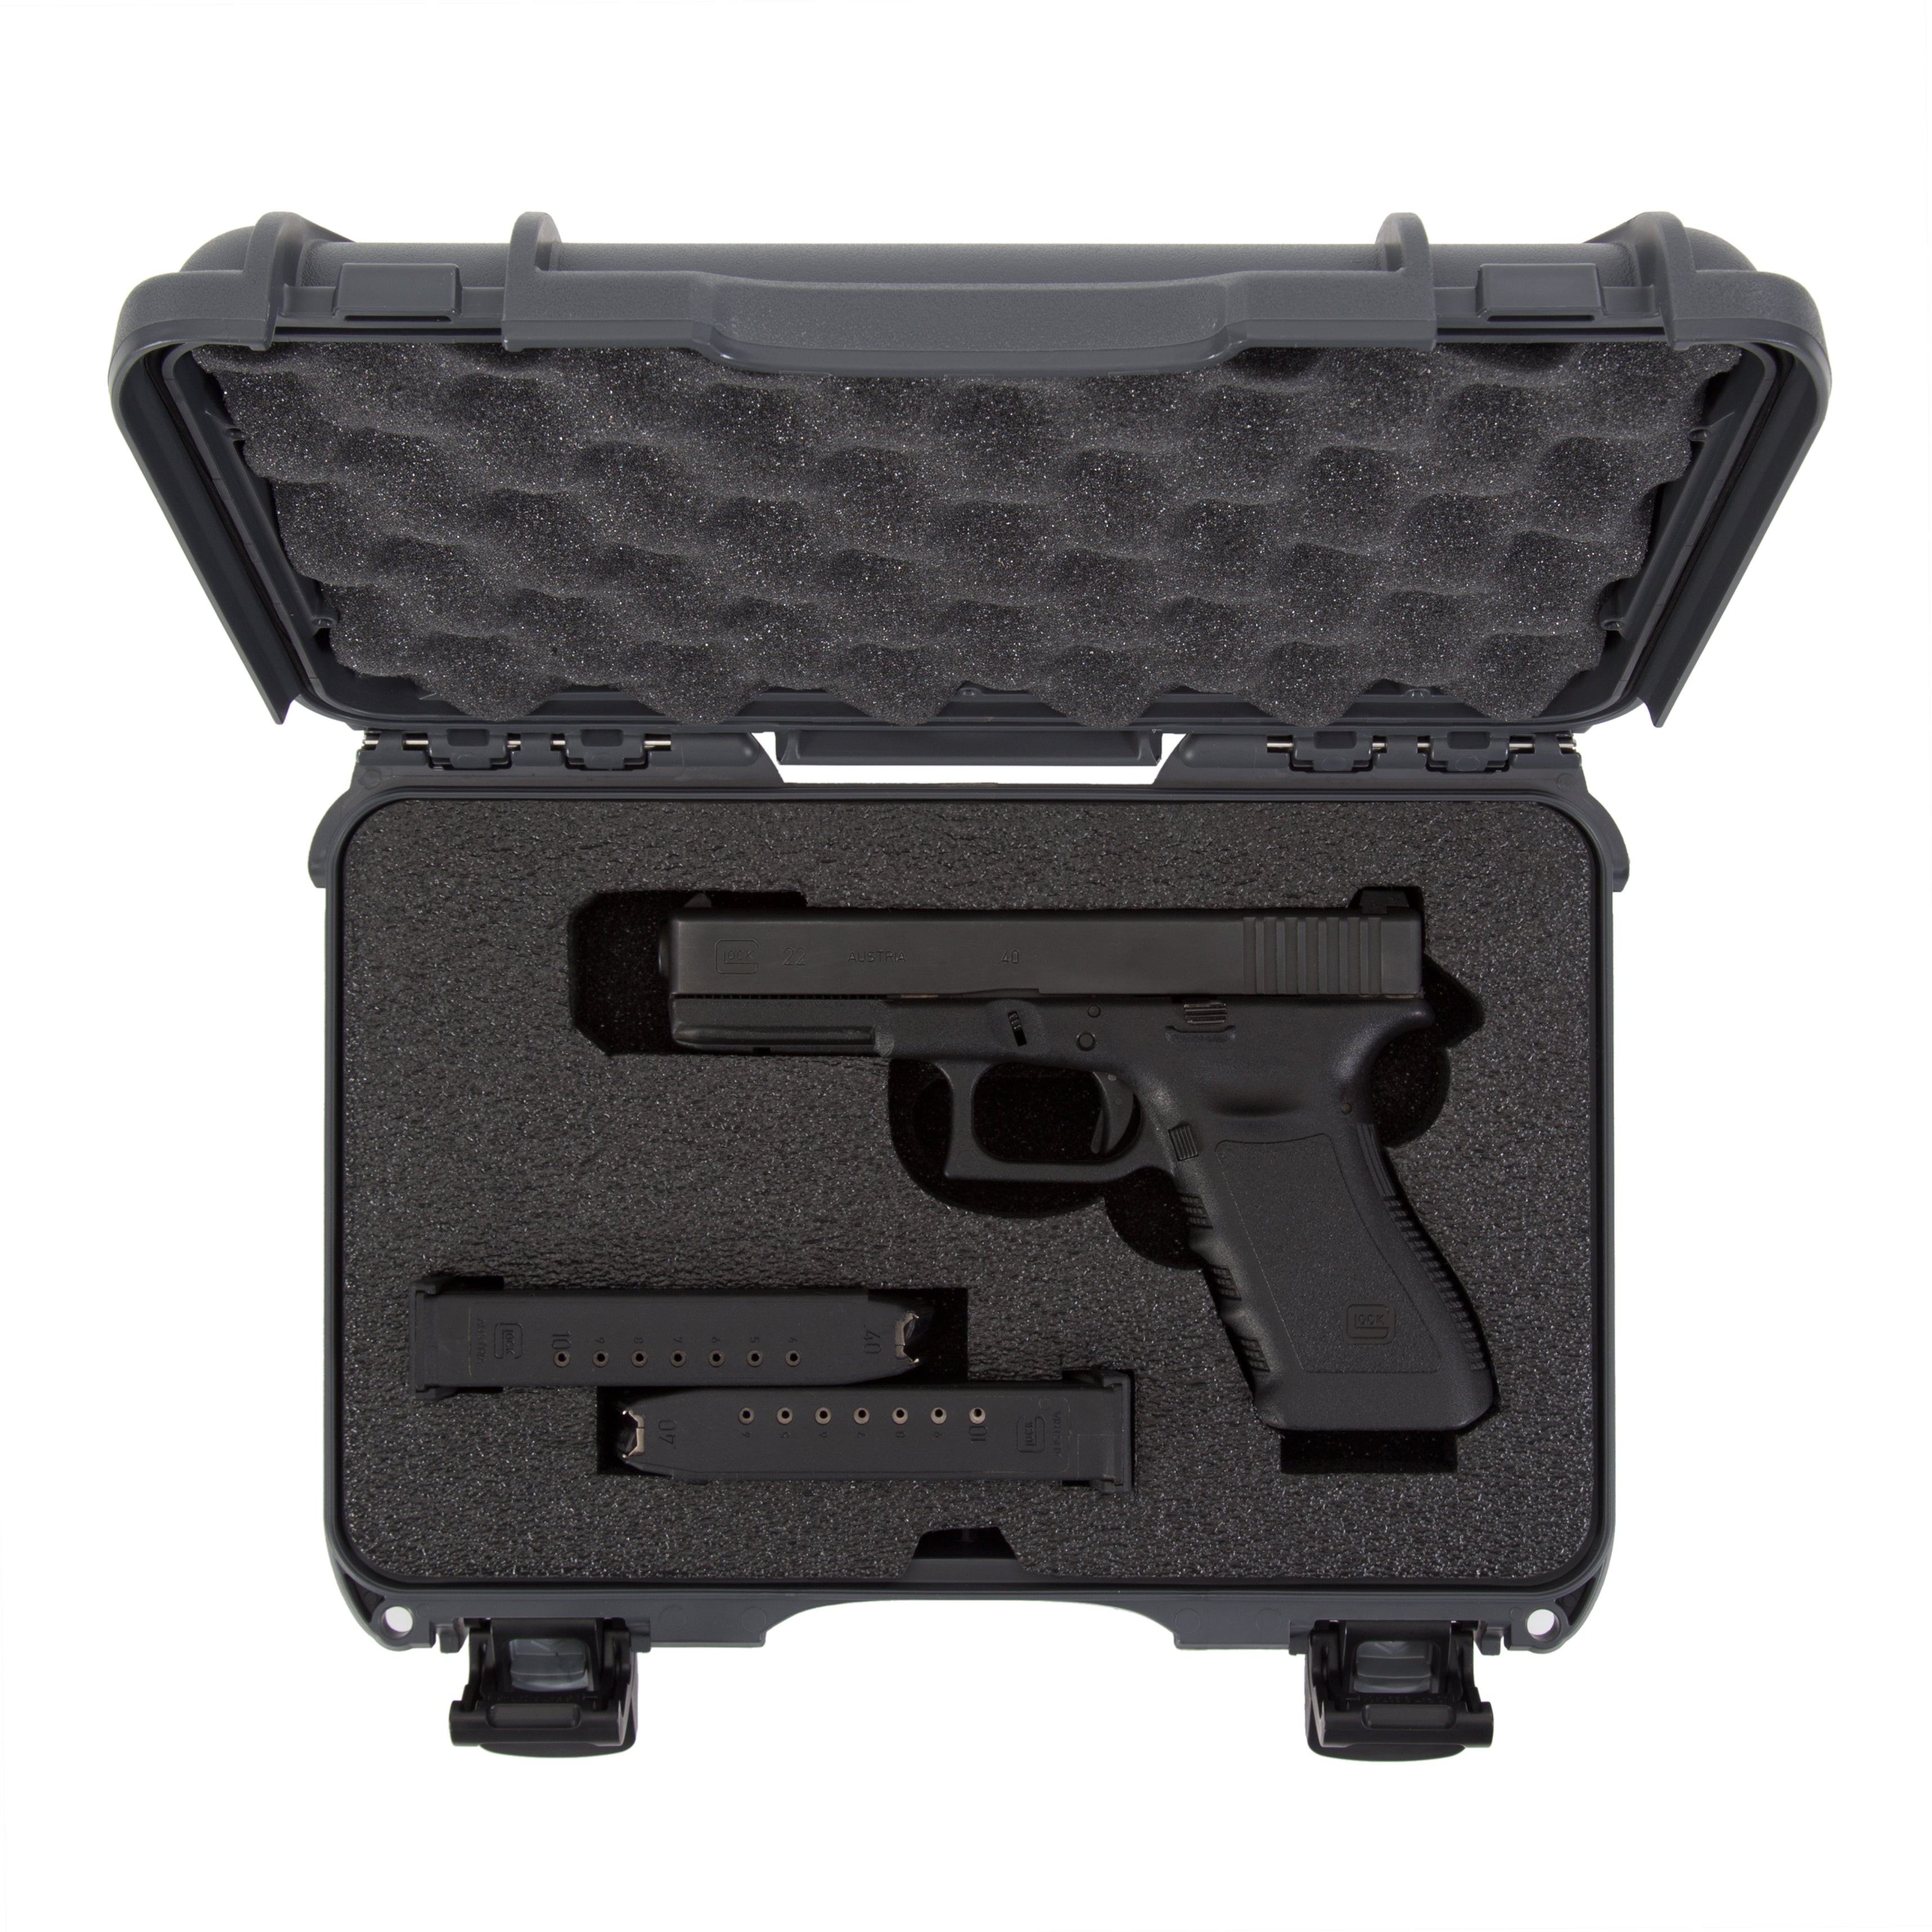 Buy Glock 26 Gen5 Online > Ammor Sportsman Shop